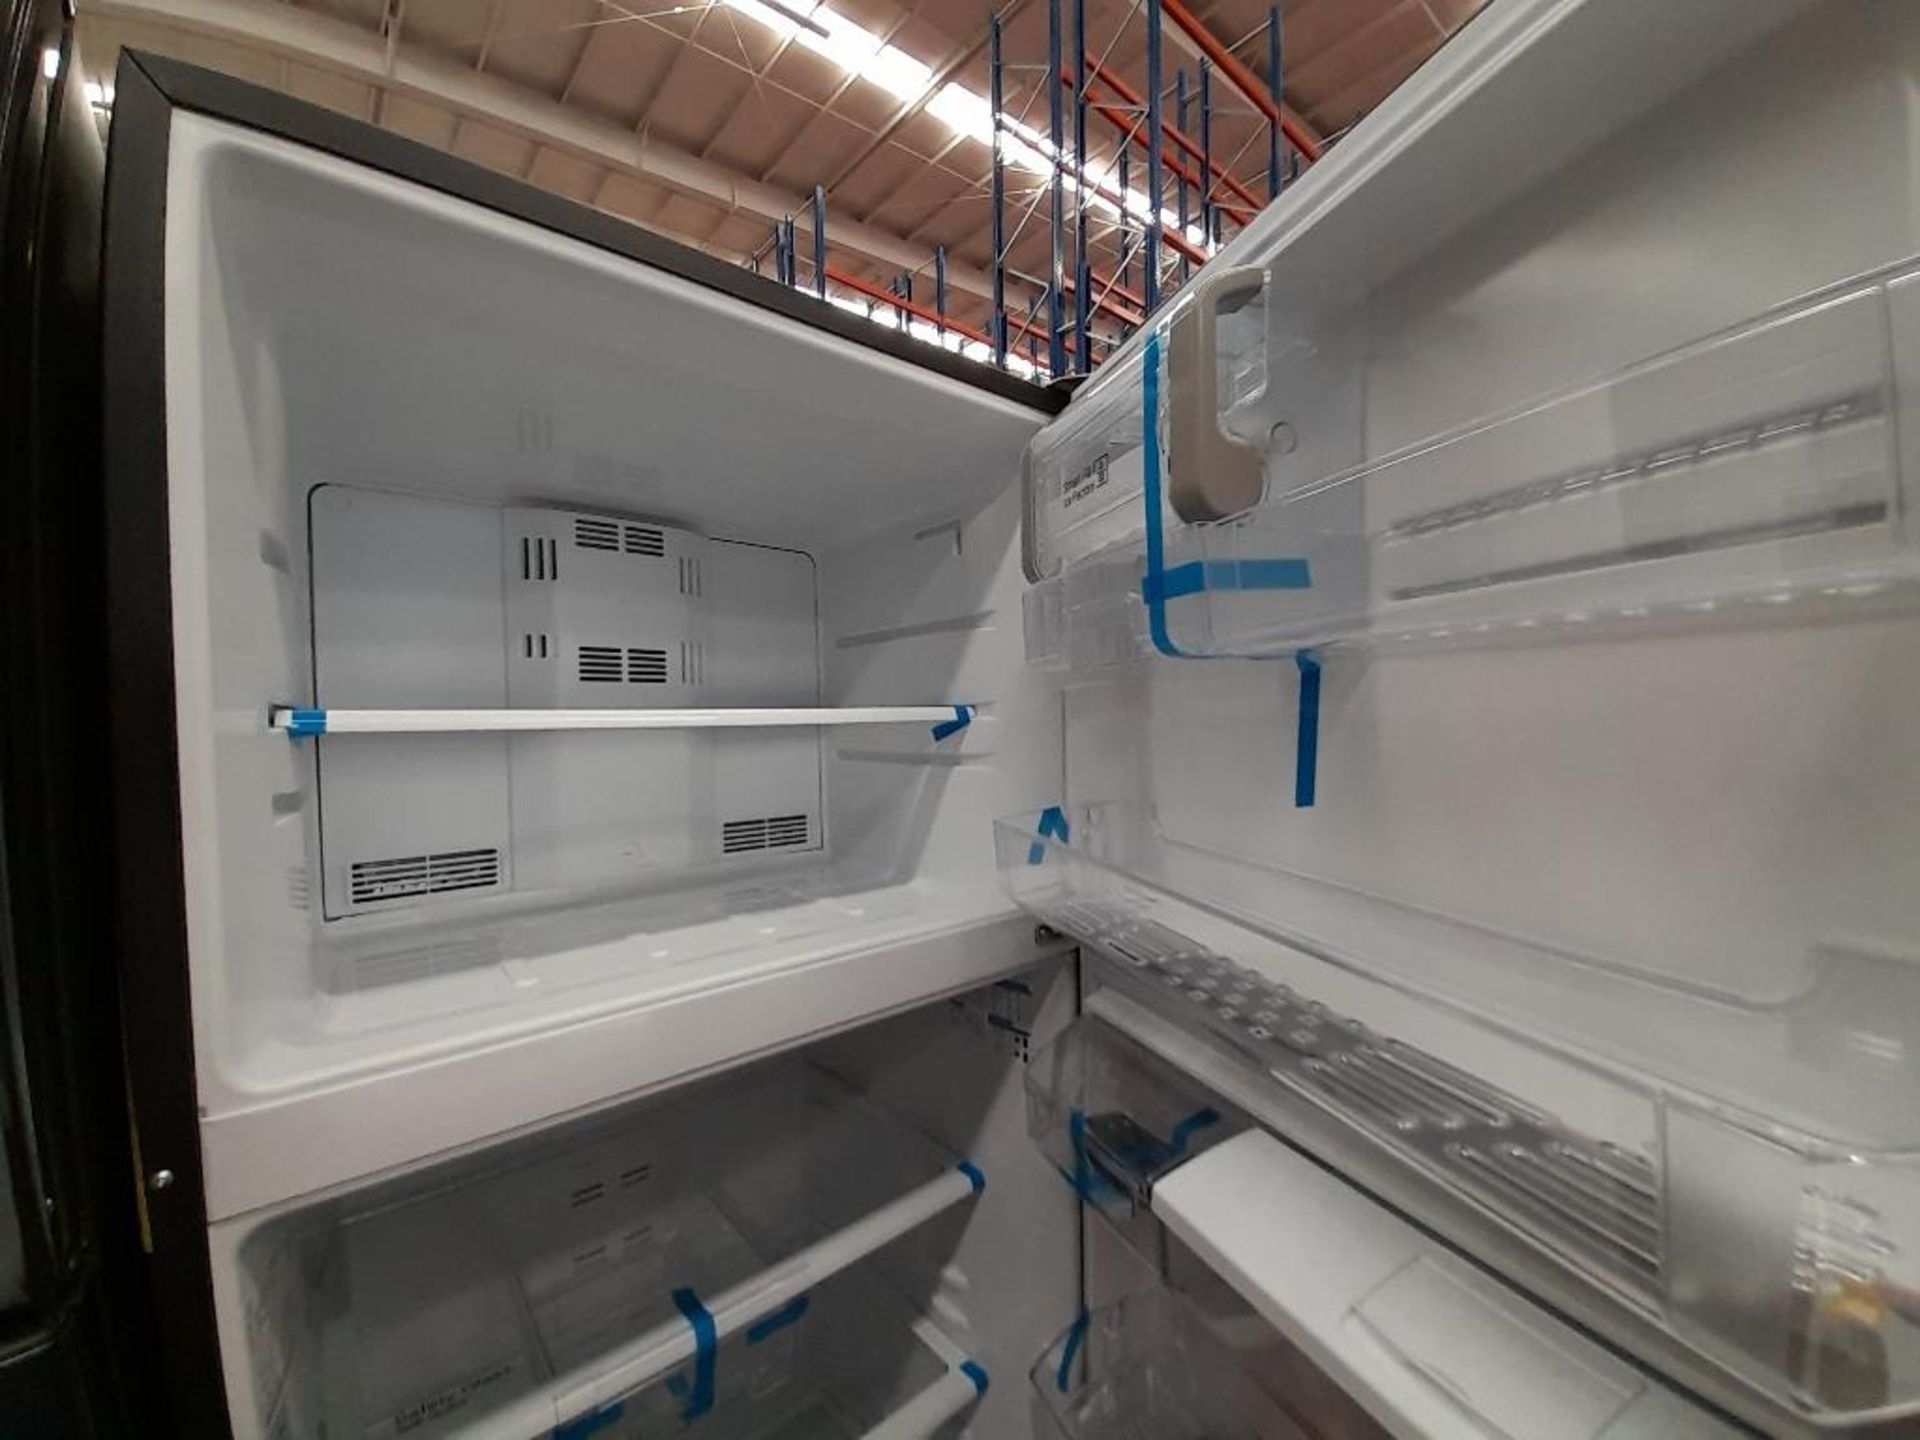 Lote de 2 refrigeradores contiene: 1 Refrigerador Con Dispensador De Agua Marca MABE, Modelo RMS510 - Image 4 of 8